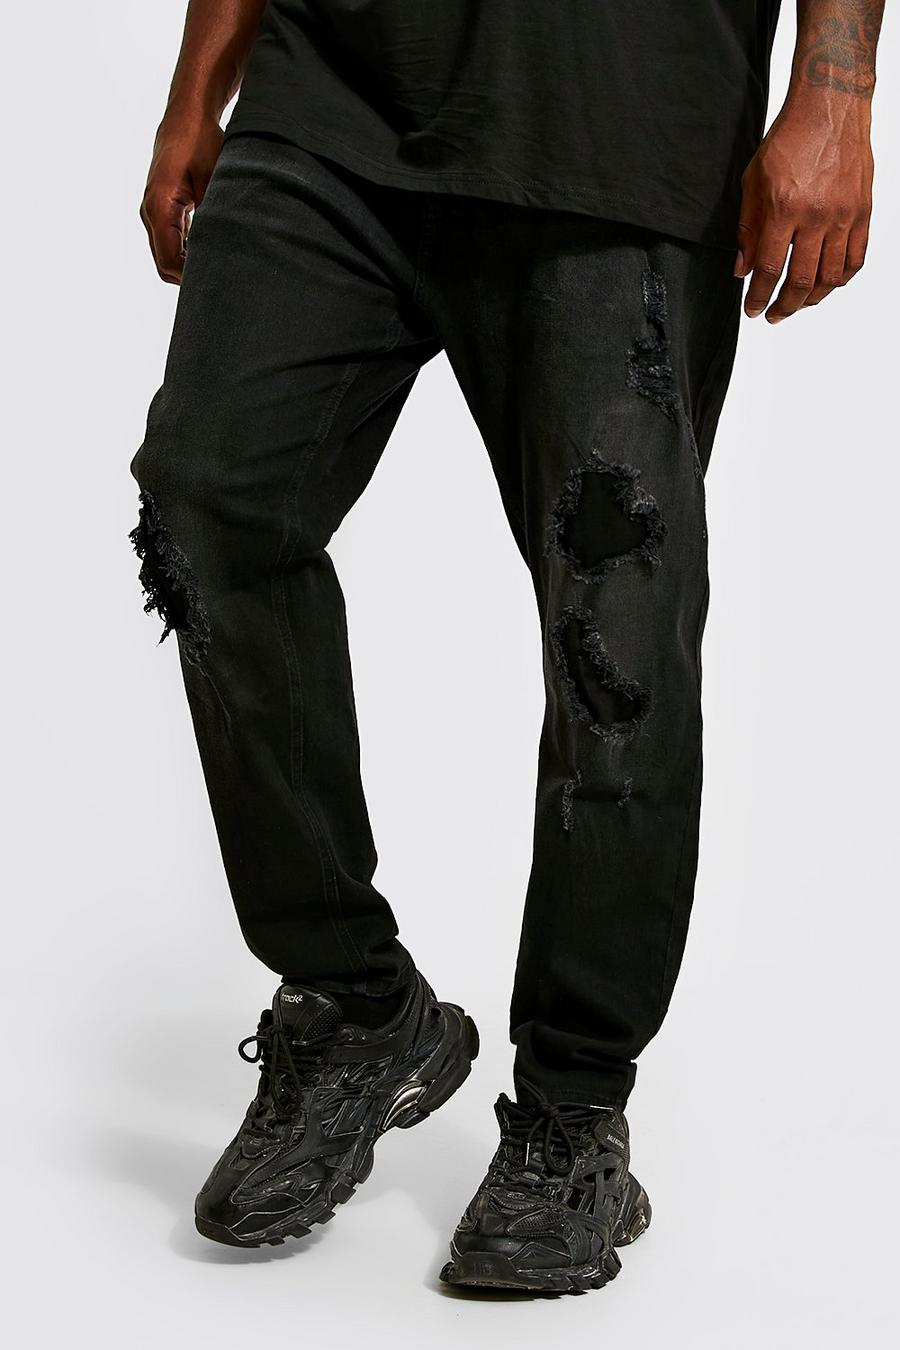 Black svart Plus Skinny Fit Jean With Rip And Repair